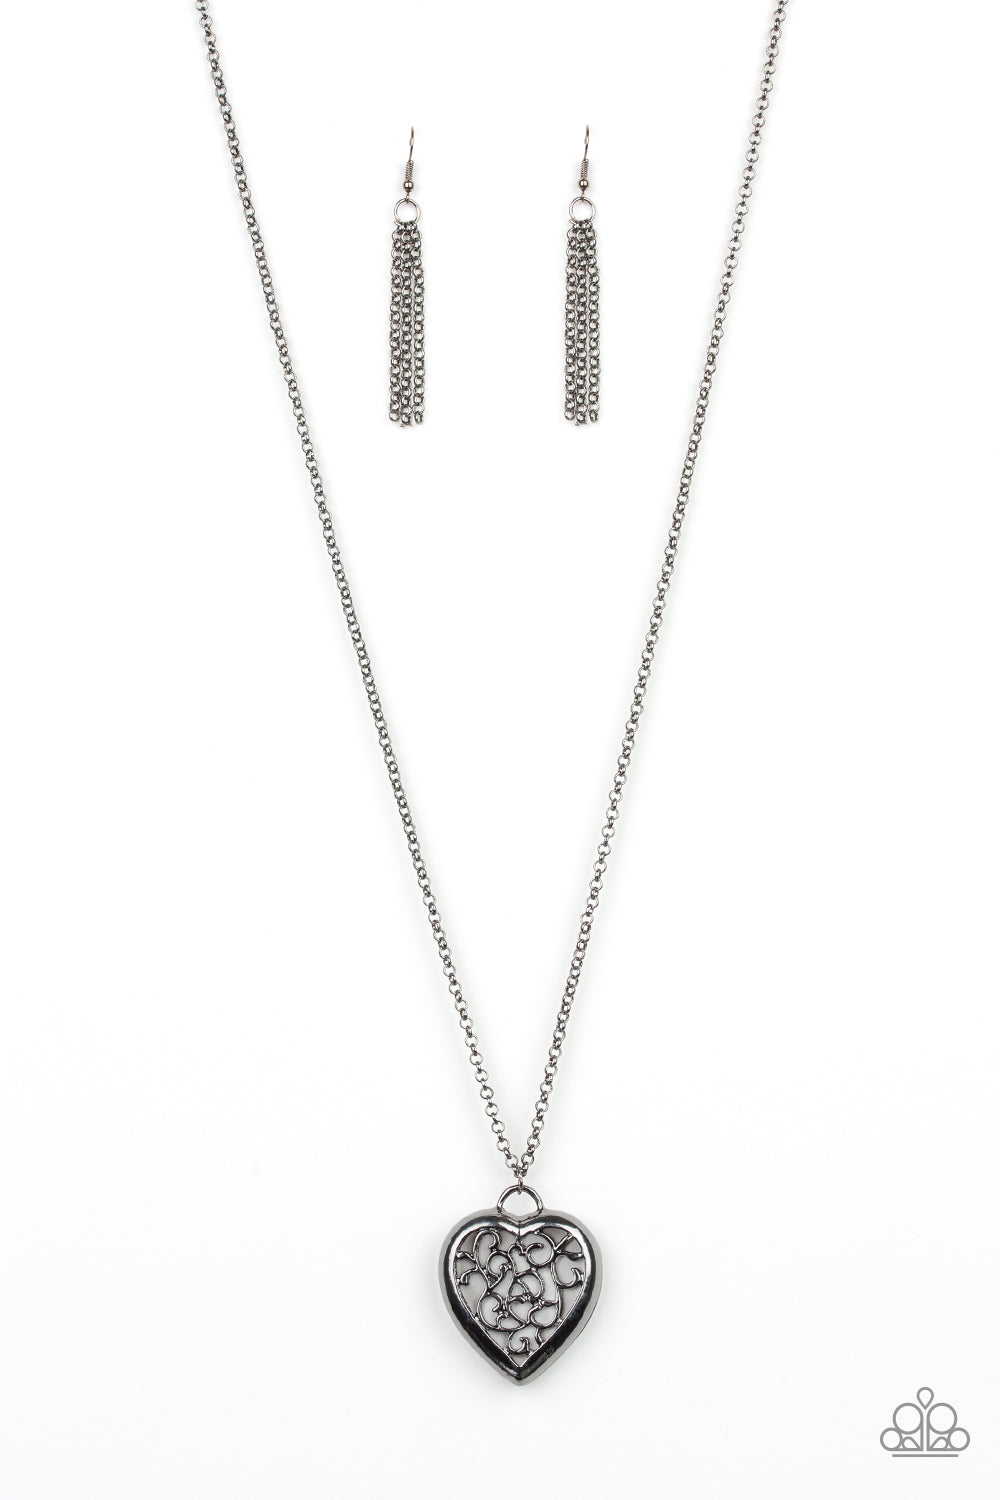 Victorian Valentine - Black Necklace freeshipping - JewLz4u Gemstone Gallery